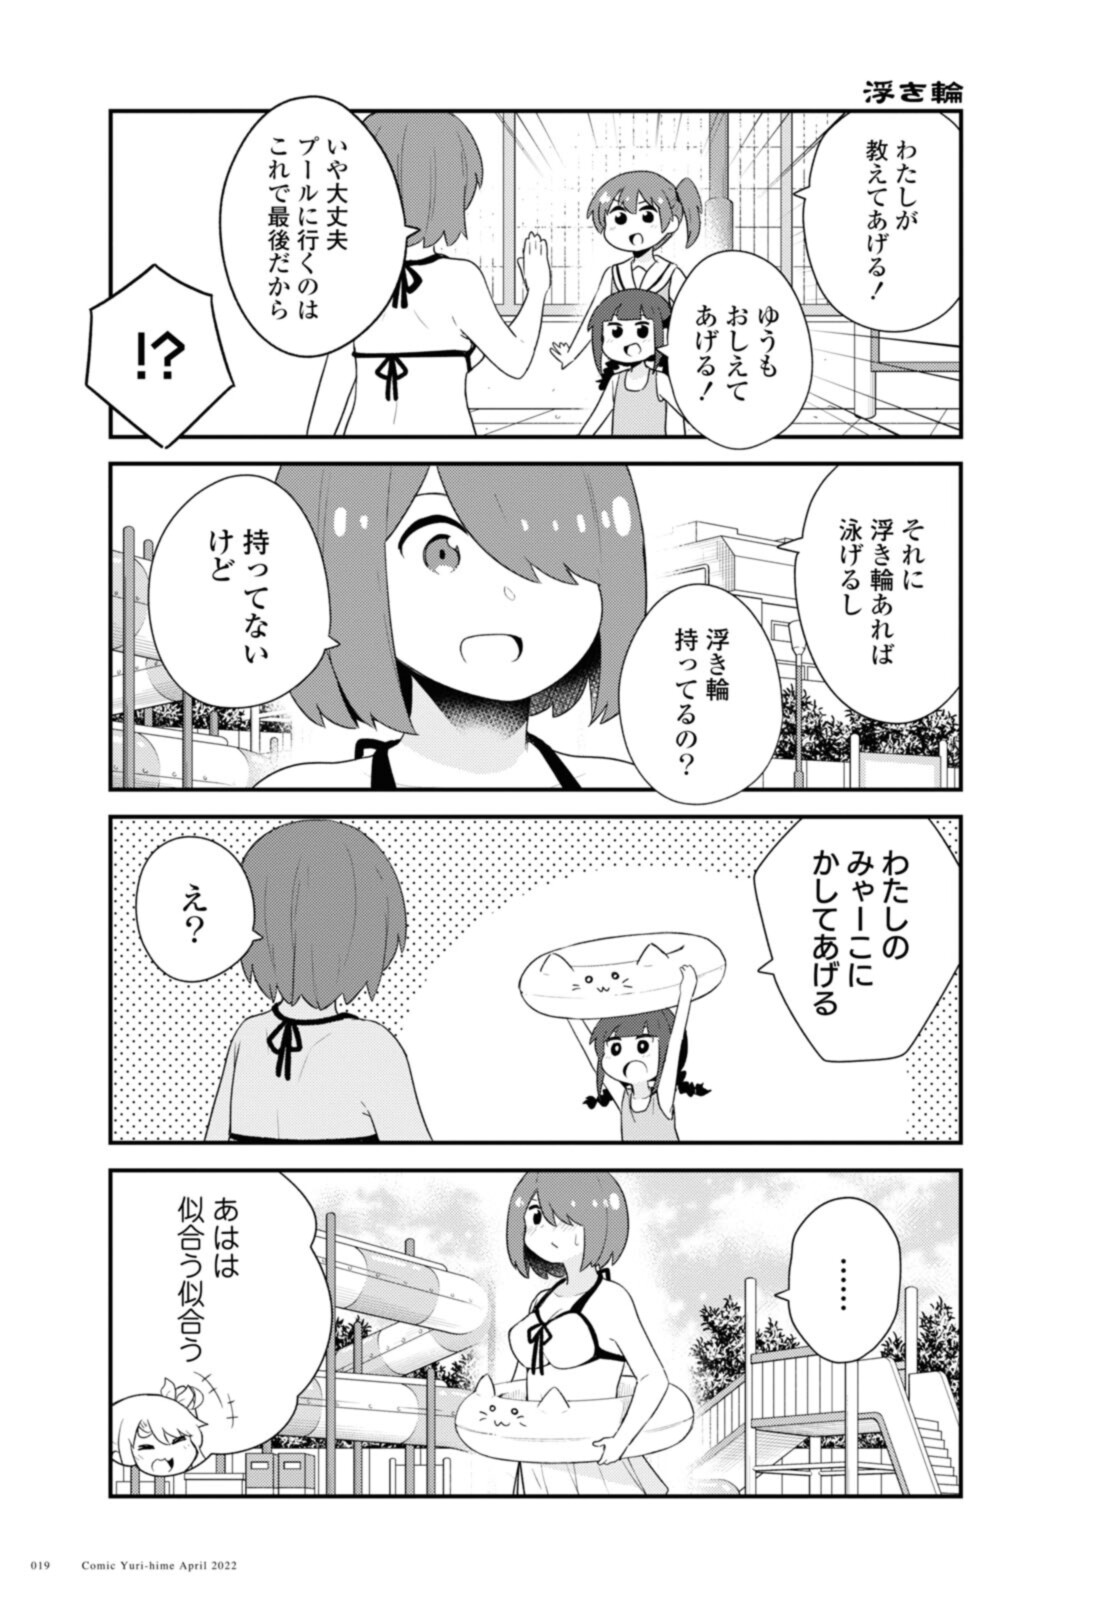 Watashi ni Tenshi ga Maiorita! - Chapter 94.2 - Page 5